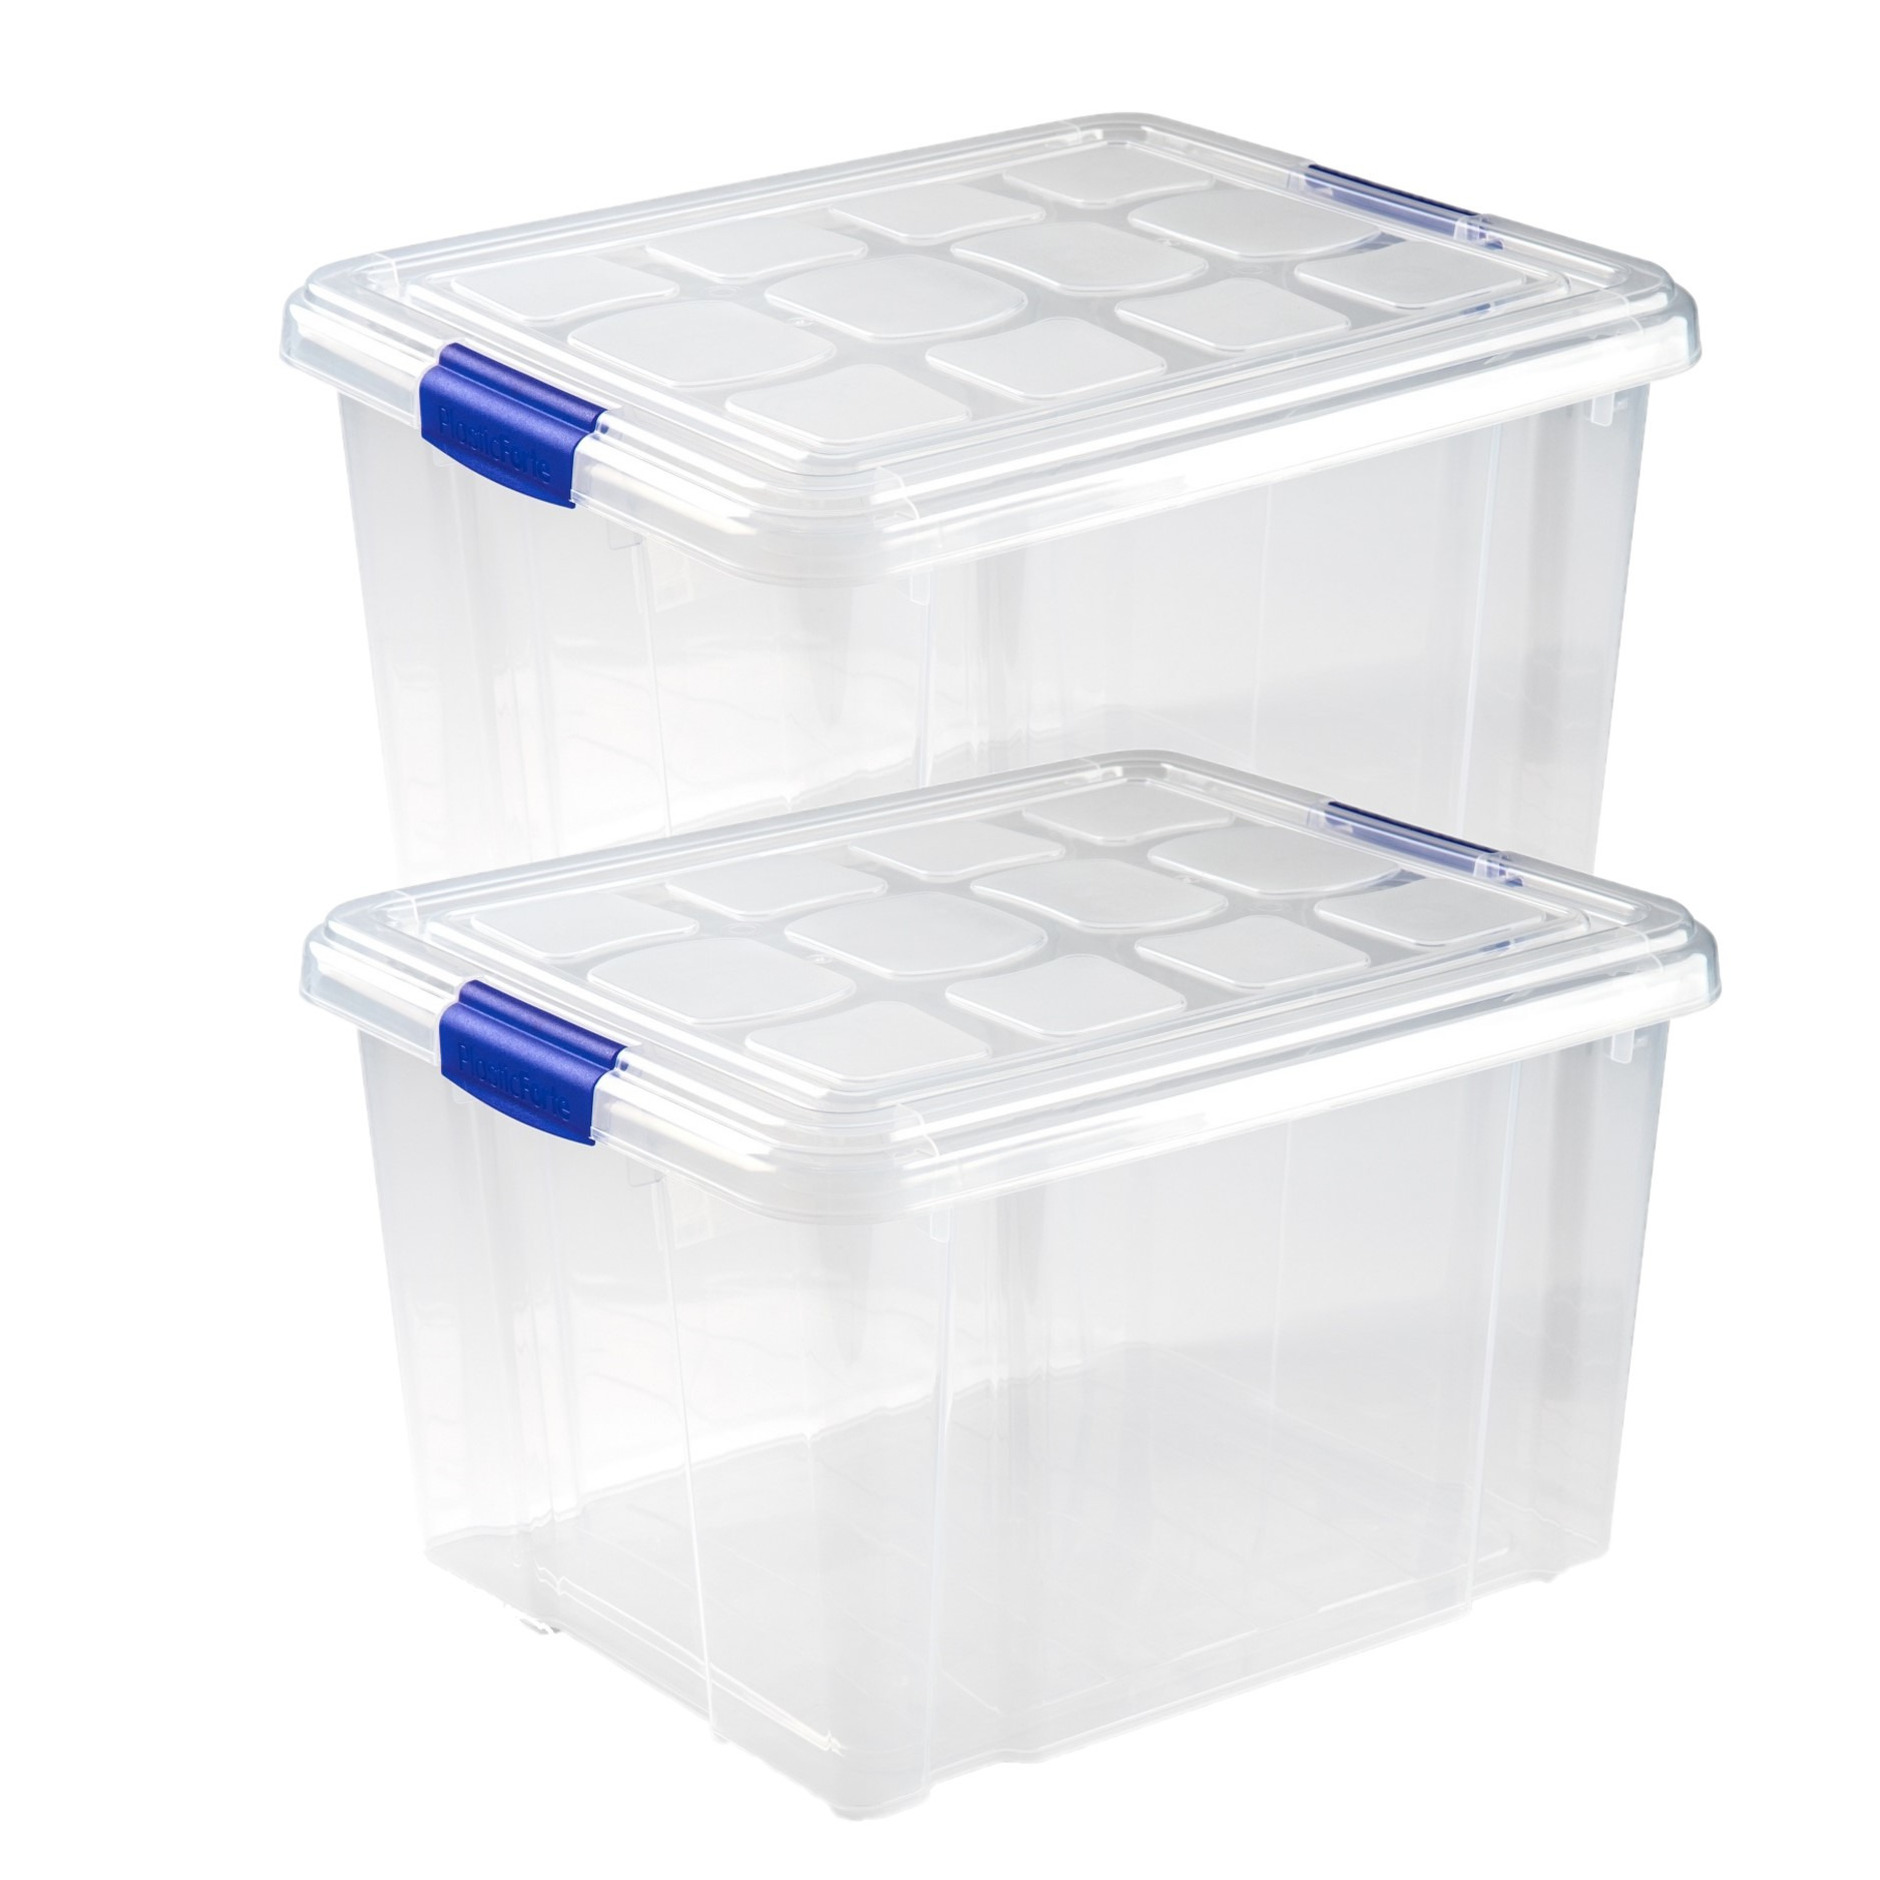 4x stuks opslagboxen-bakken-organizers met deksel 25 liter 42 x 36 x 25 cm transparant